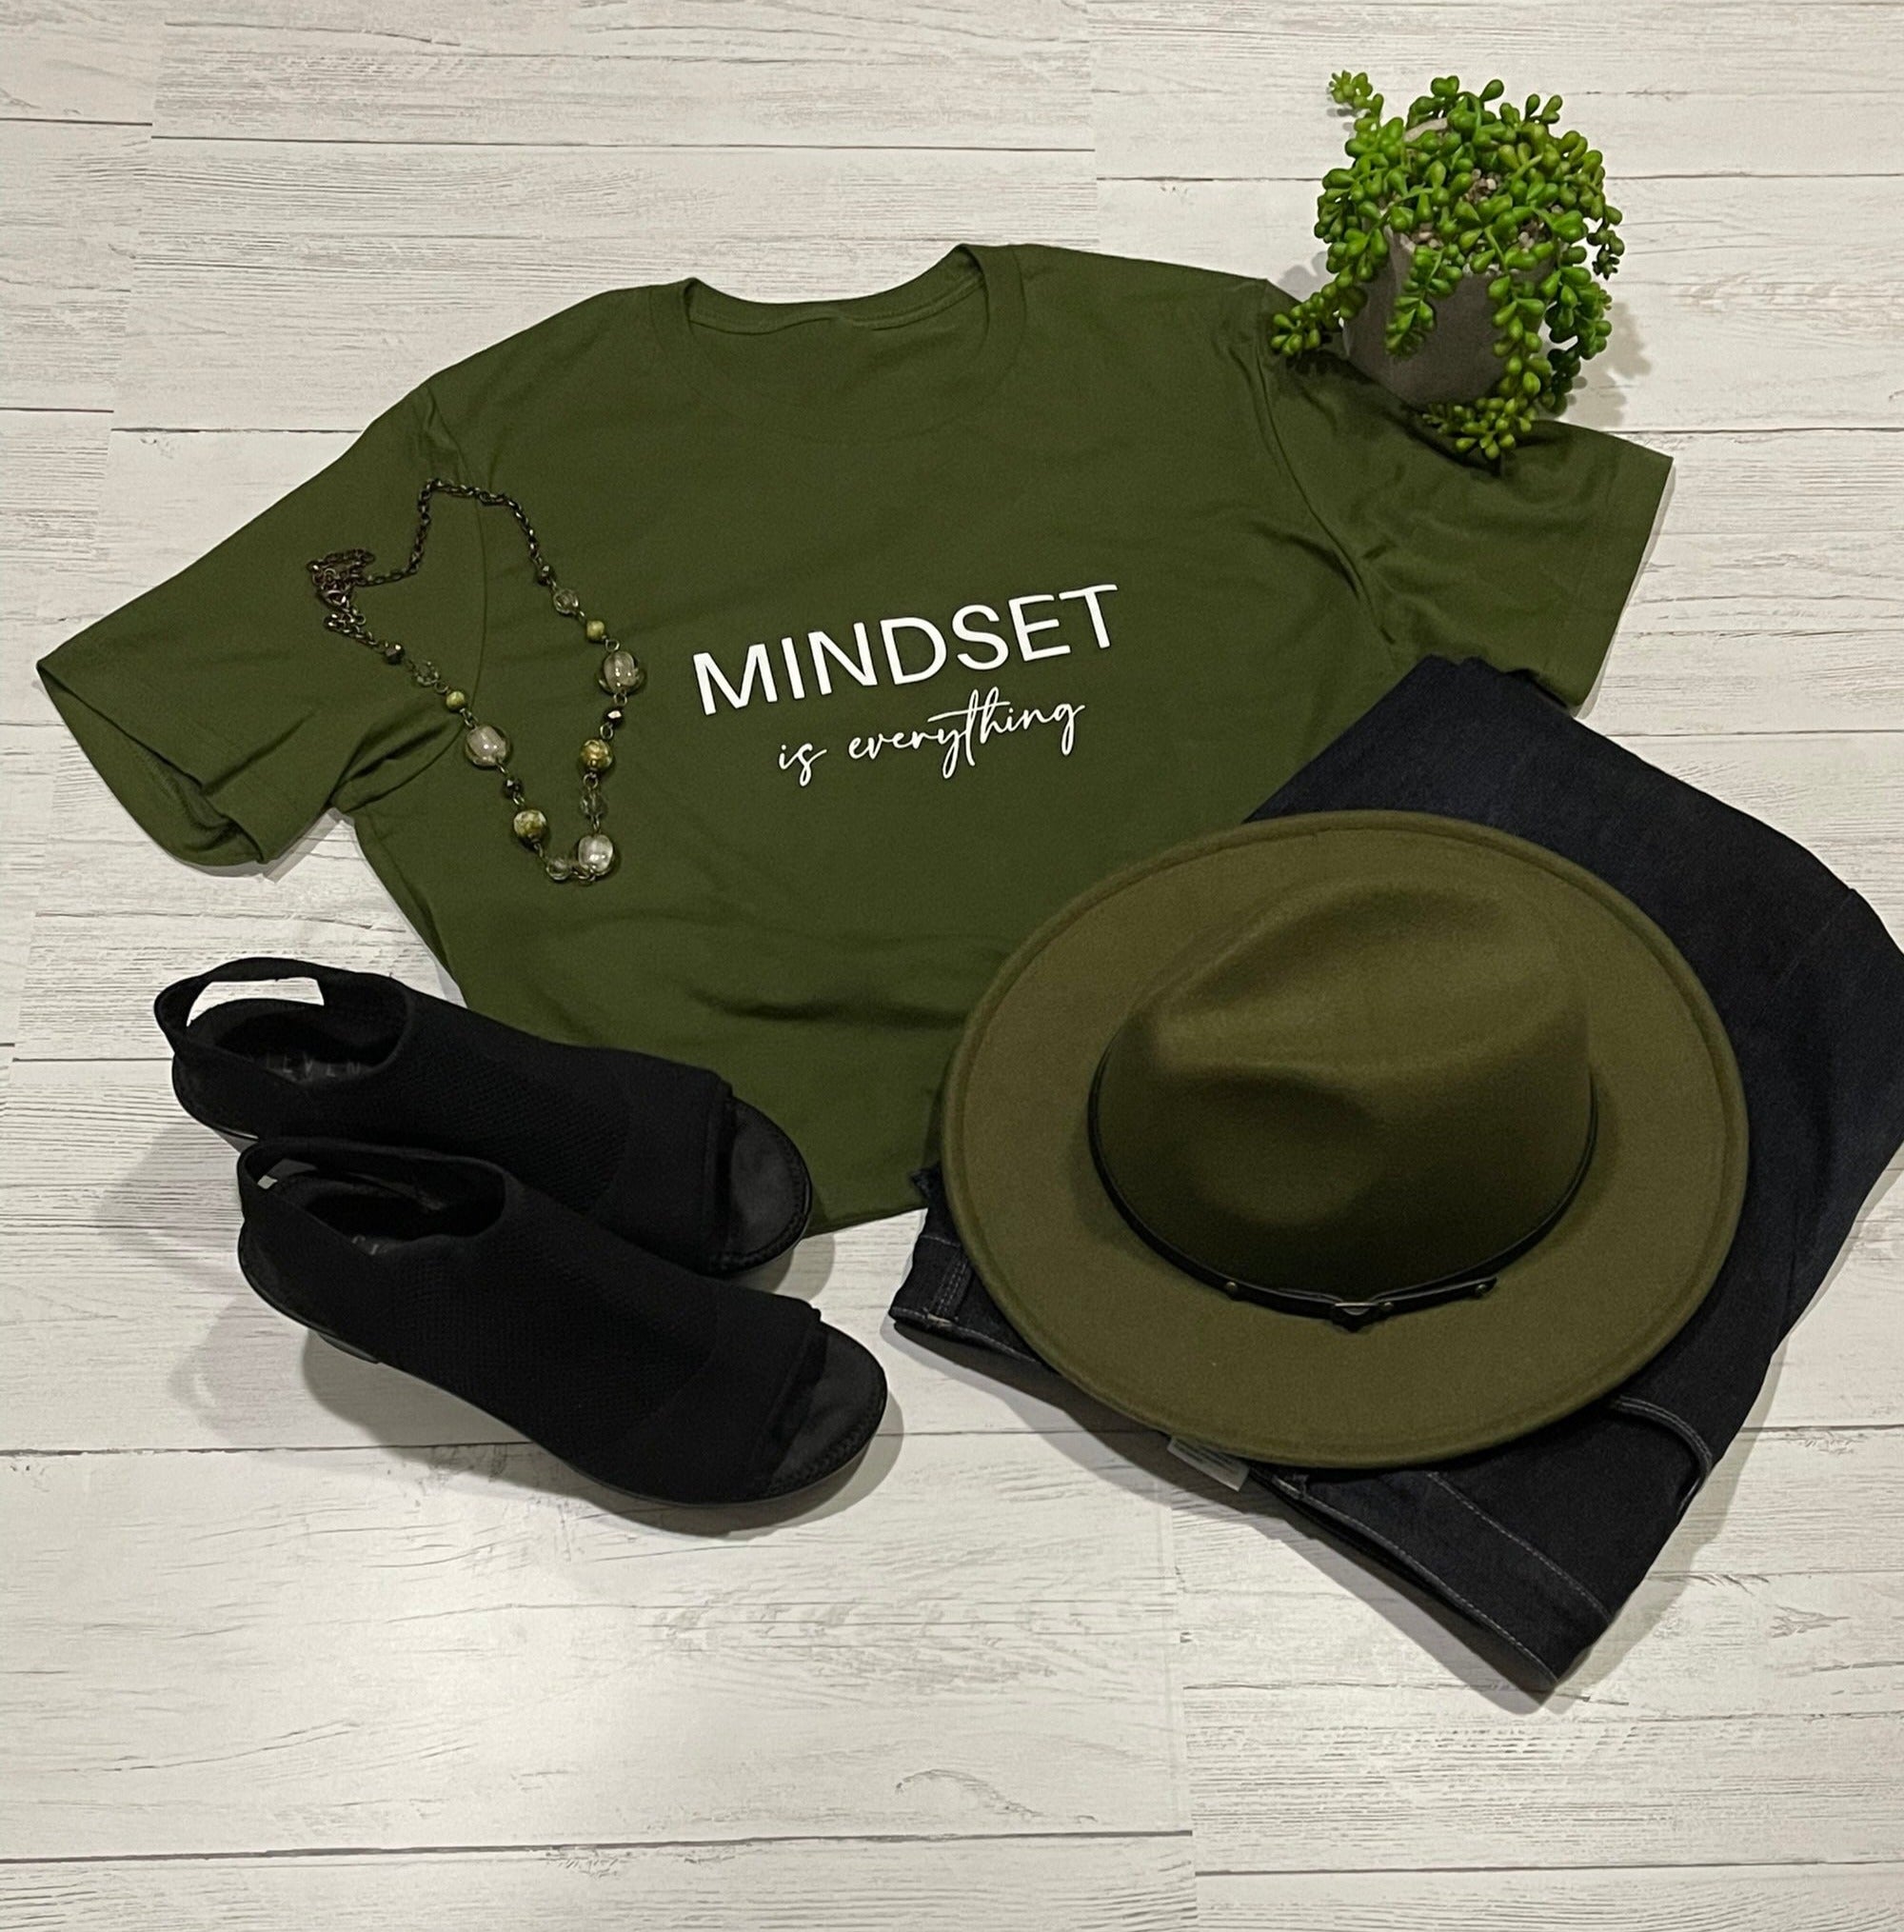 Mindset T-Shirts (short sleeve shirt)